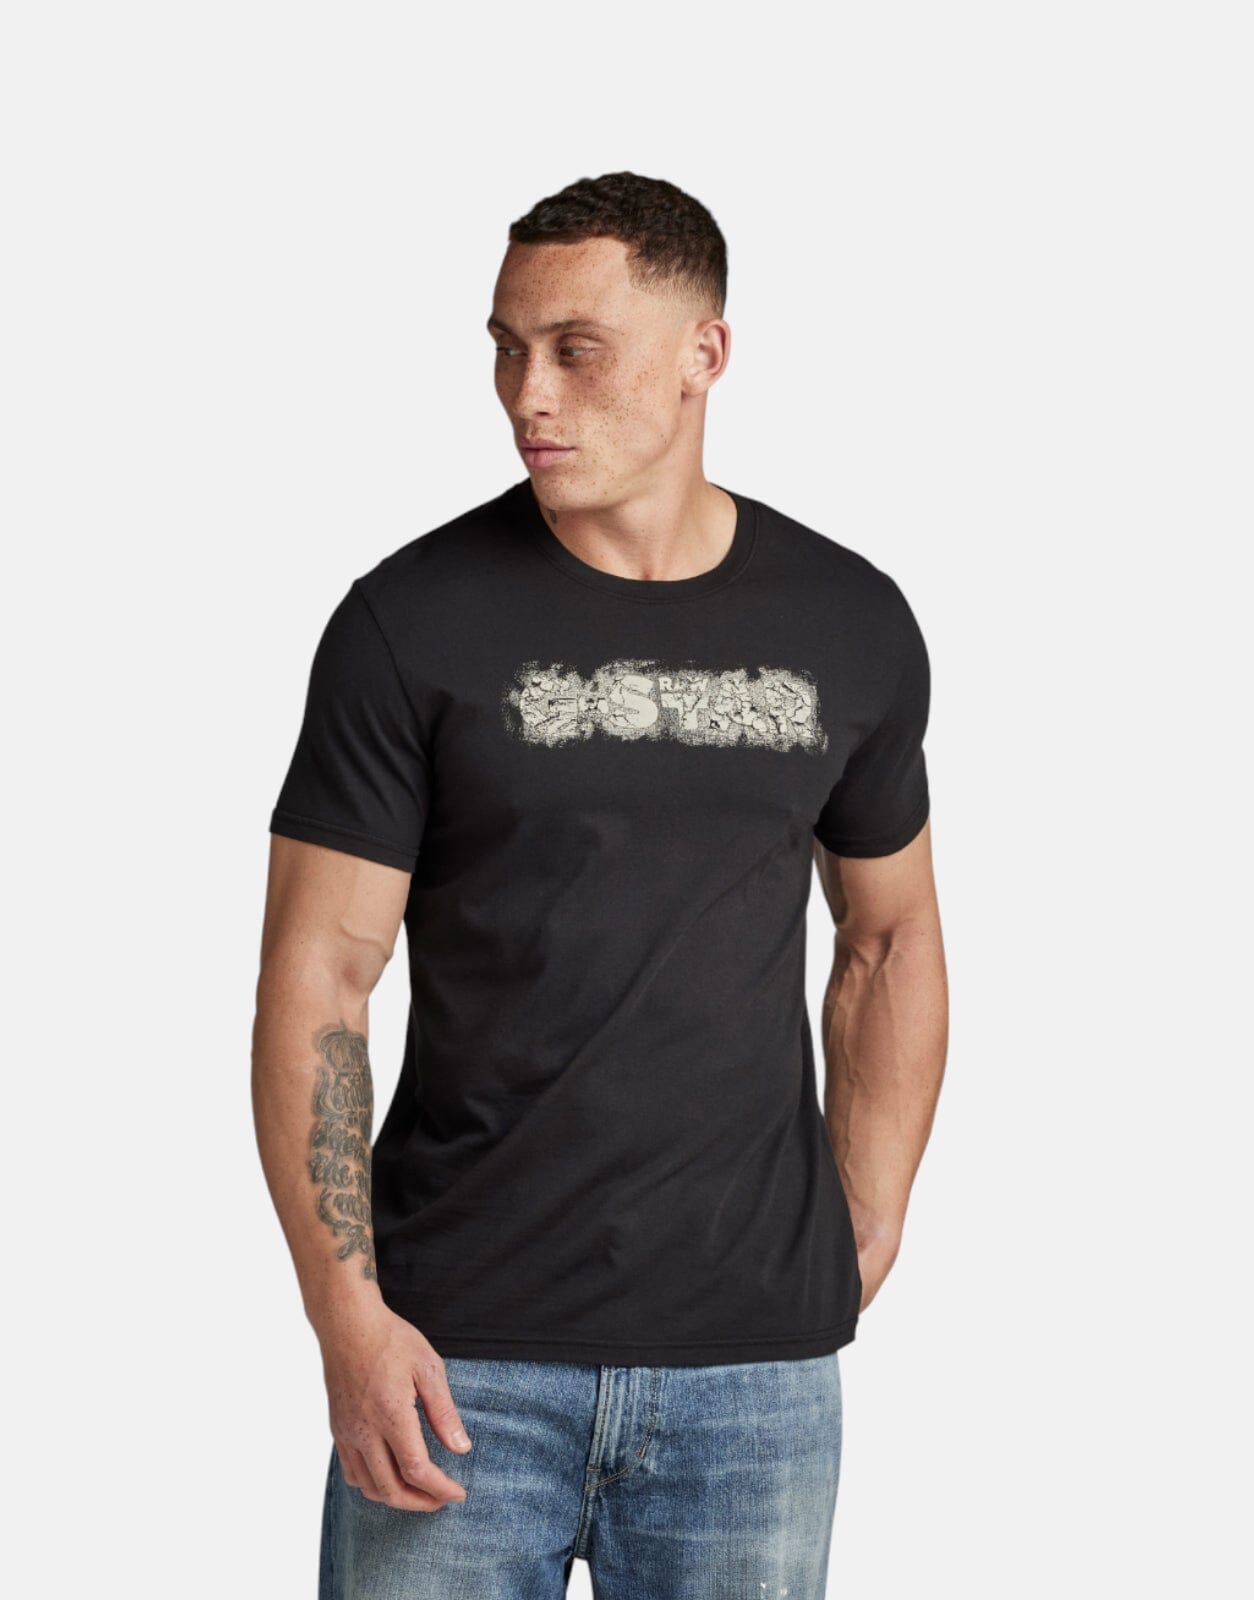 G-Star RAW Distressed Logo Black T-Shirt, XXL / Black